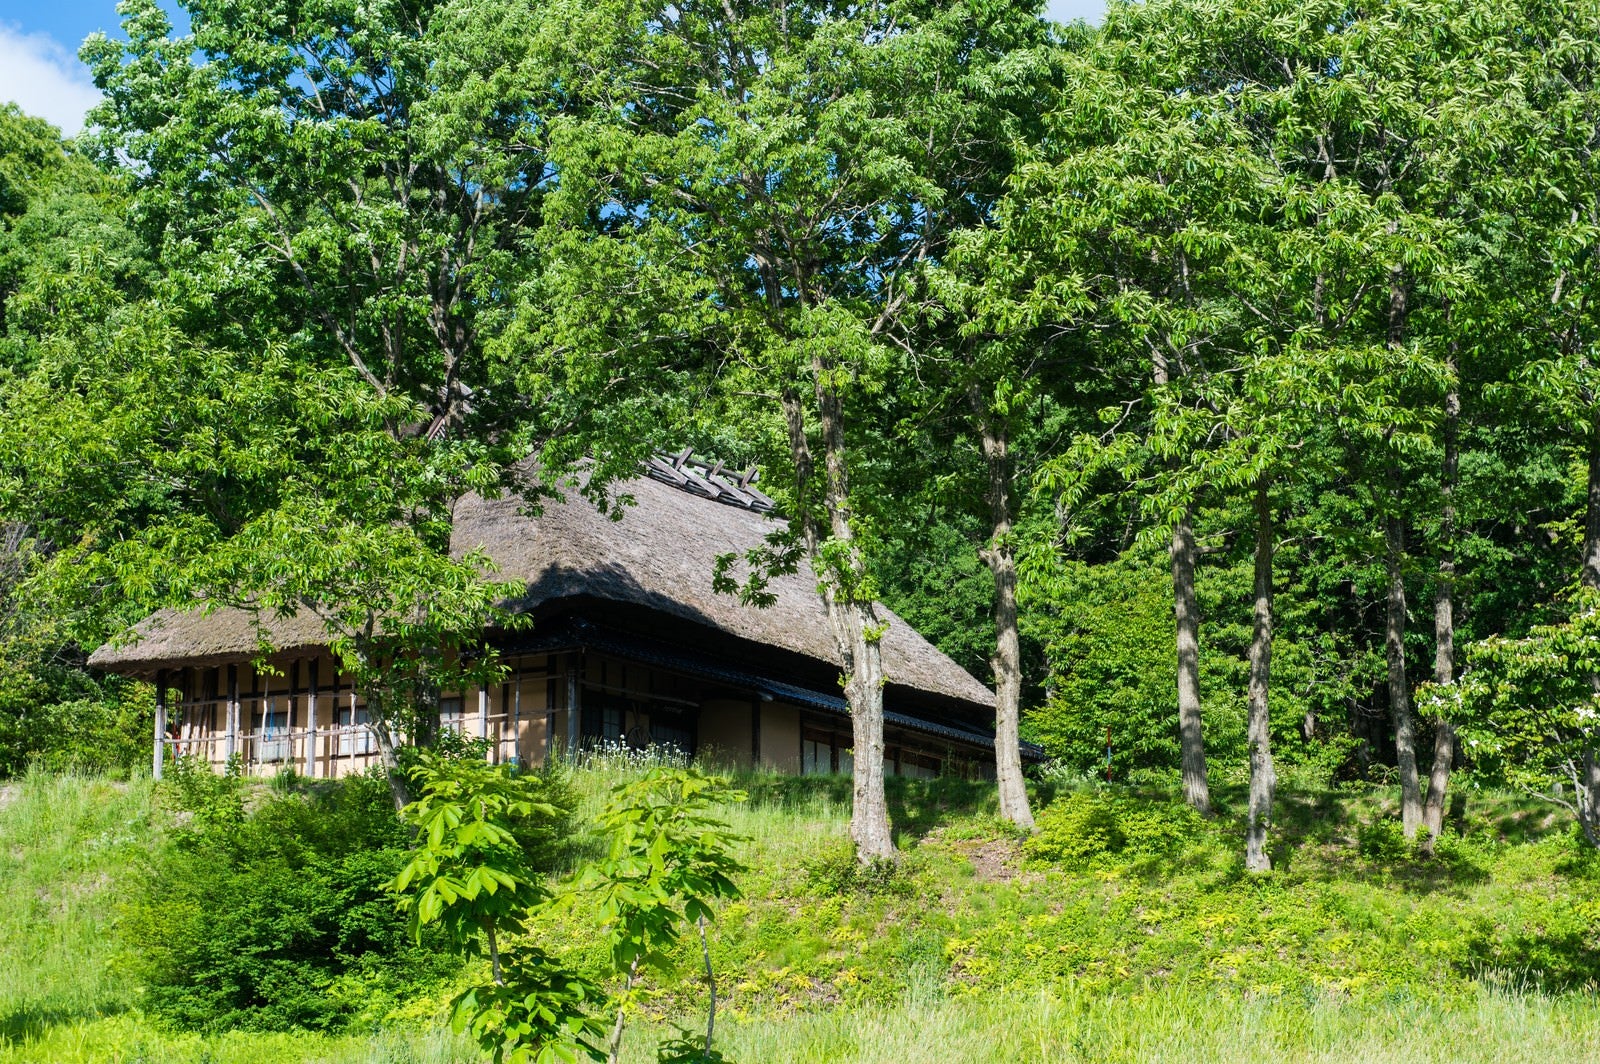 「新緑に包まれる茅葺き屋根の古民家」の写真